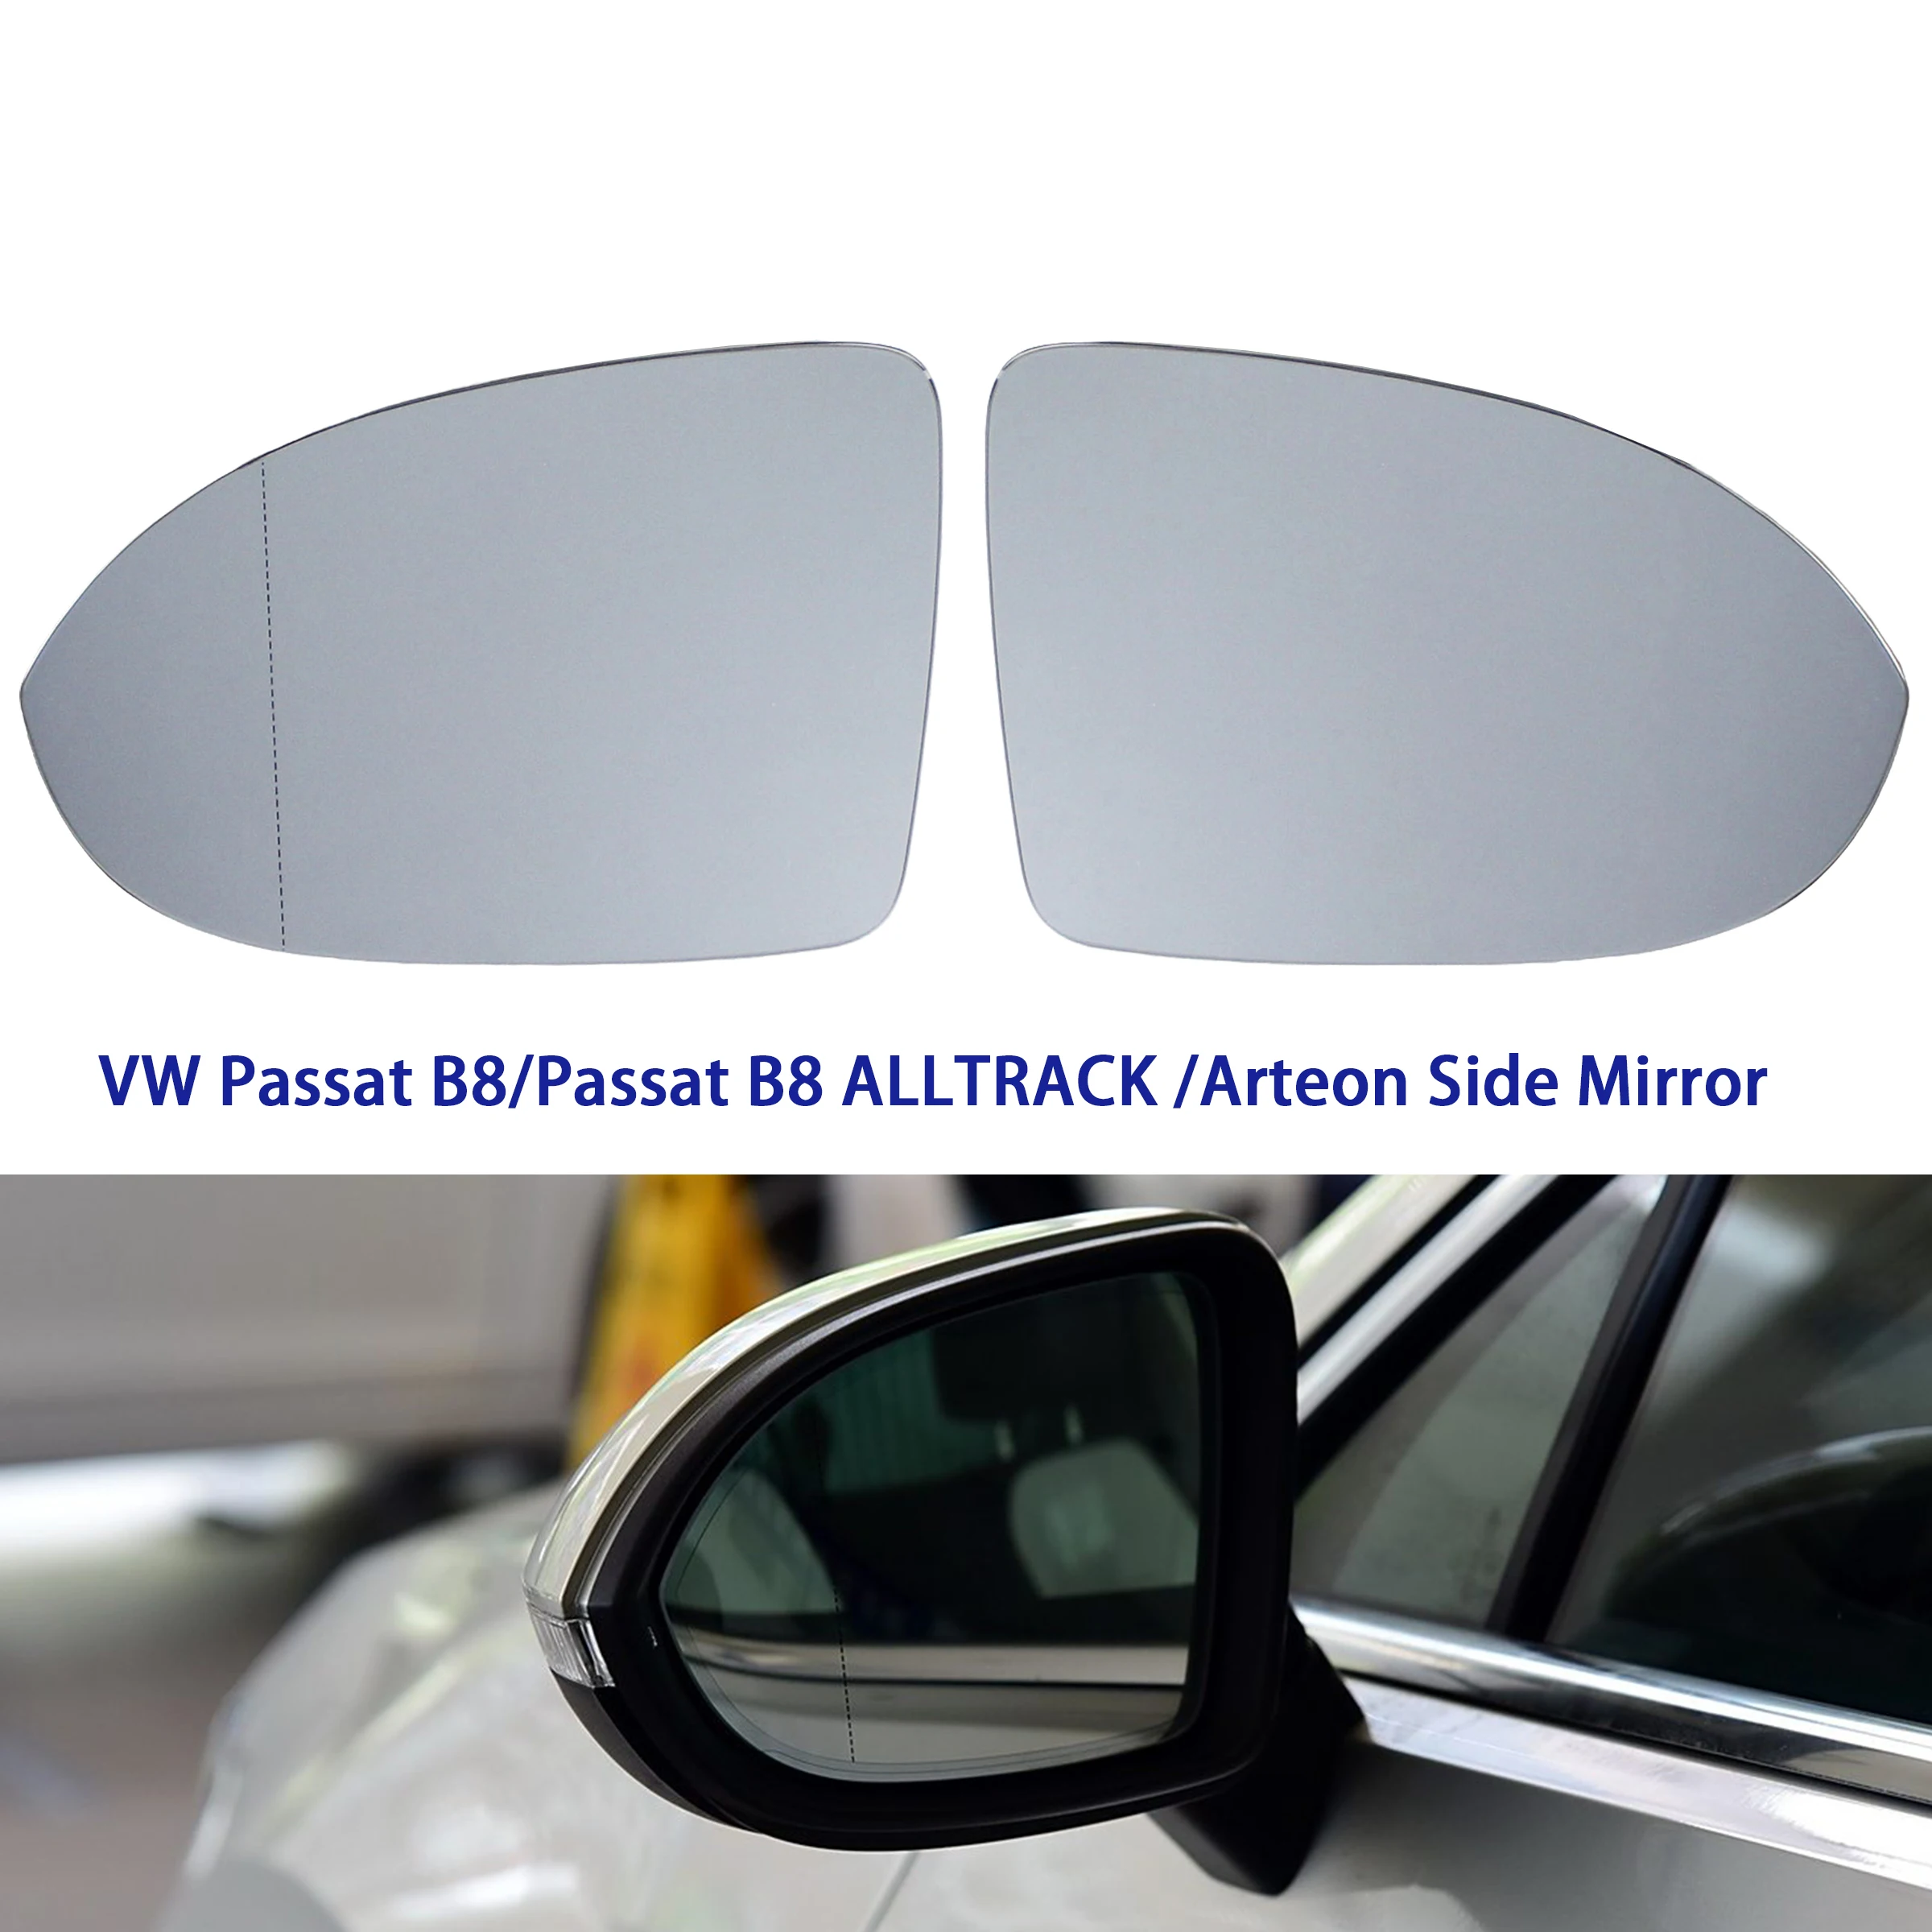 

Auto Wing Mirror Left Right Door Side Glass Lens for Volkswagen Passat B8 Passat B8 ALLTRACK Arteon 2016-2022 with Heating